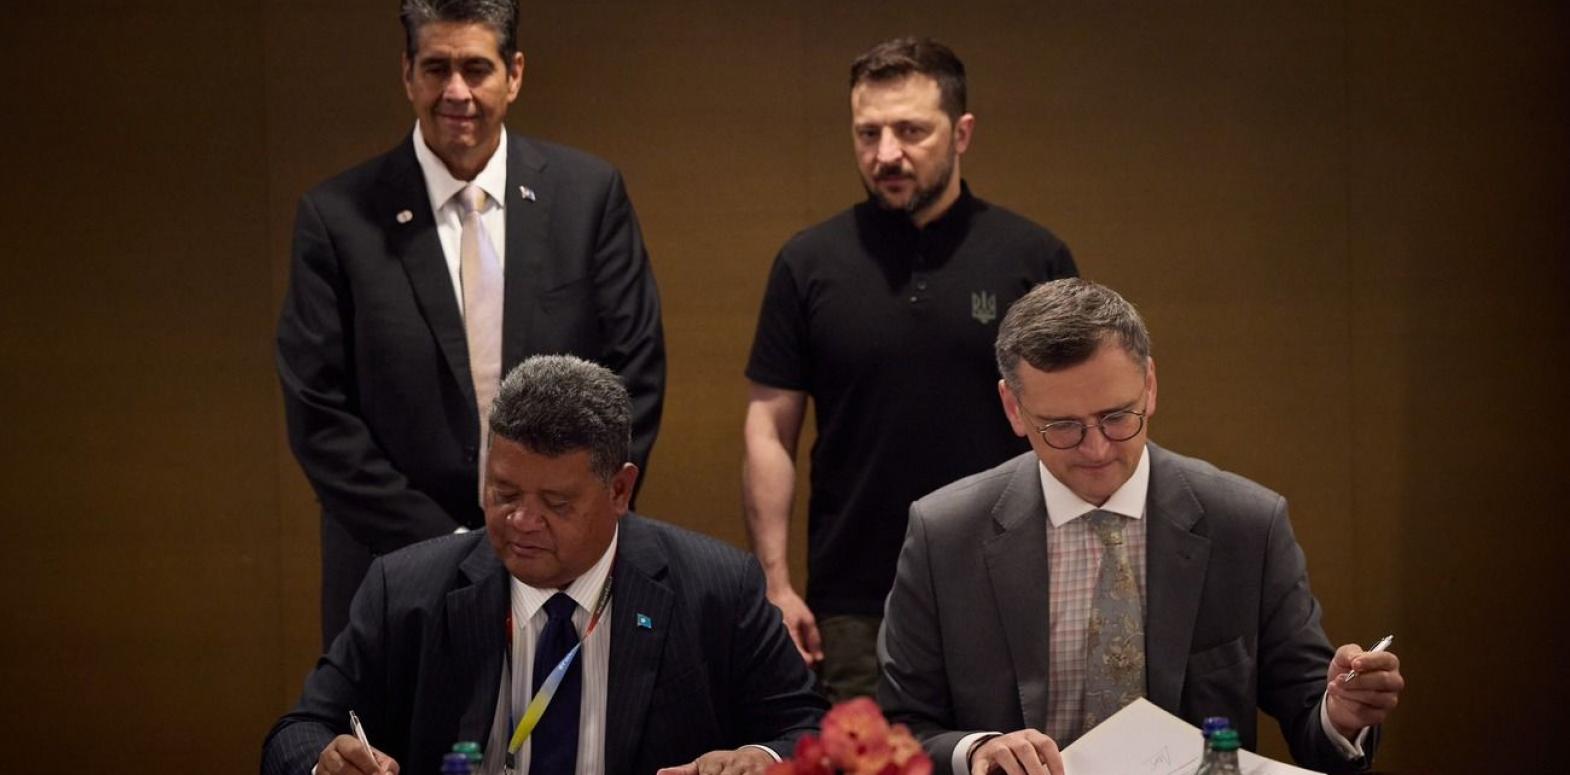 Украина и Палау установили дипломатические отношения